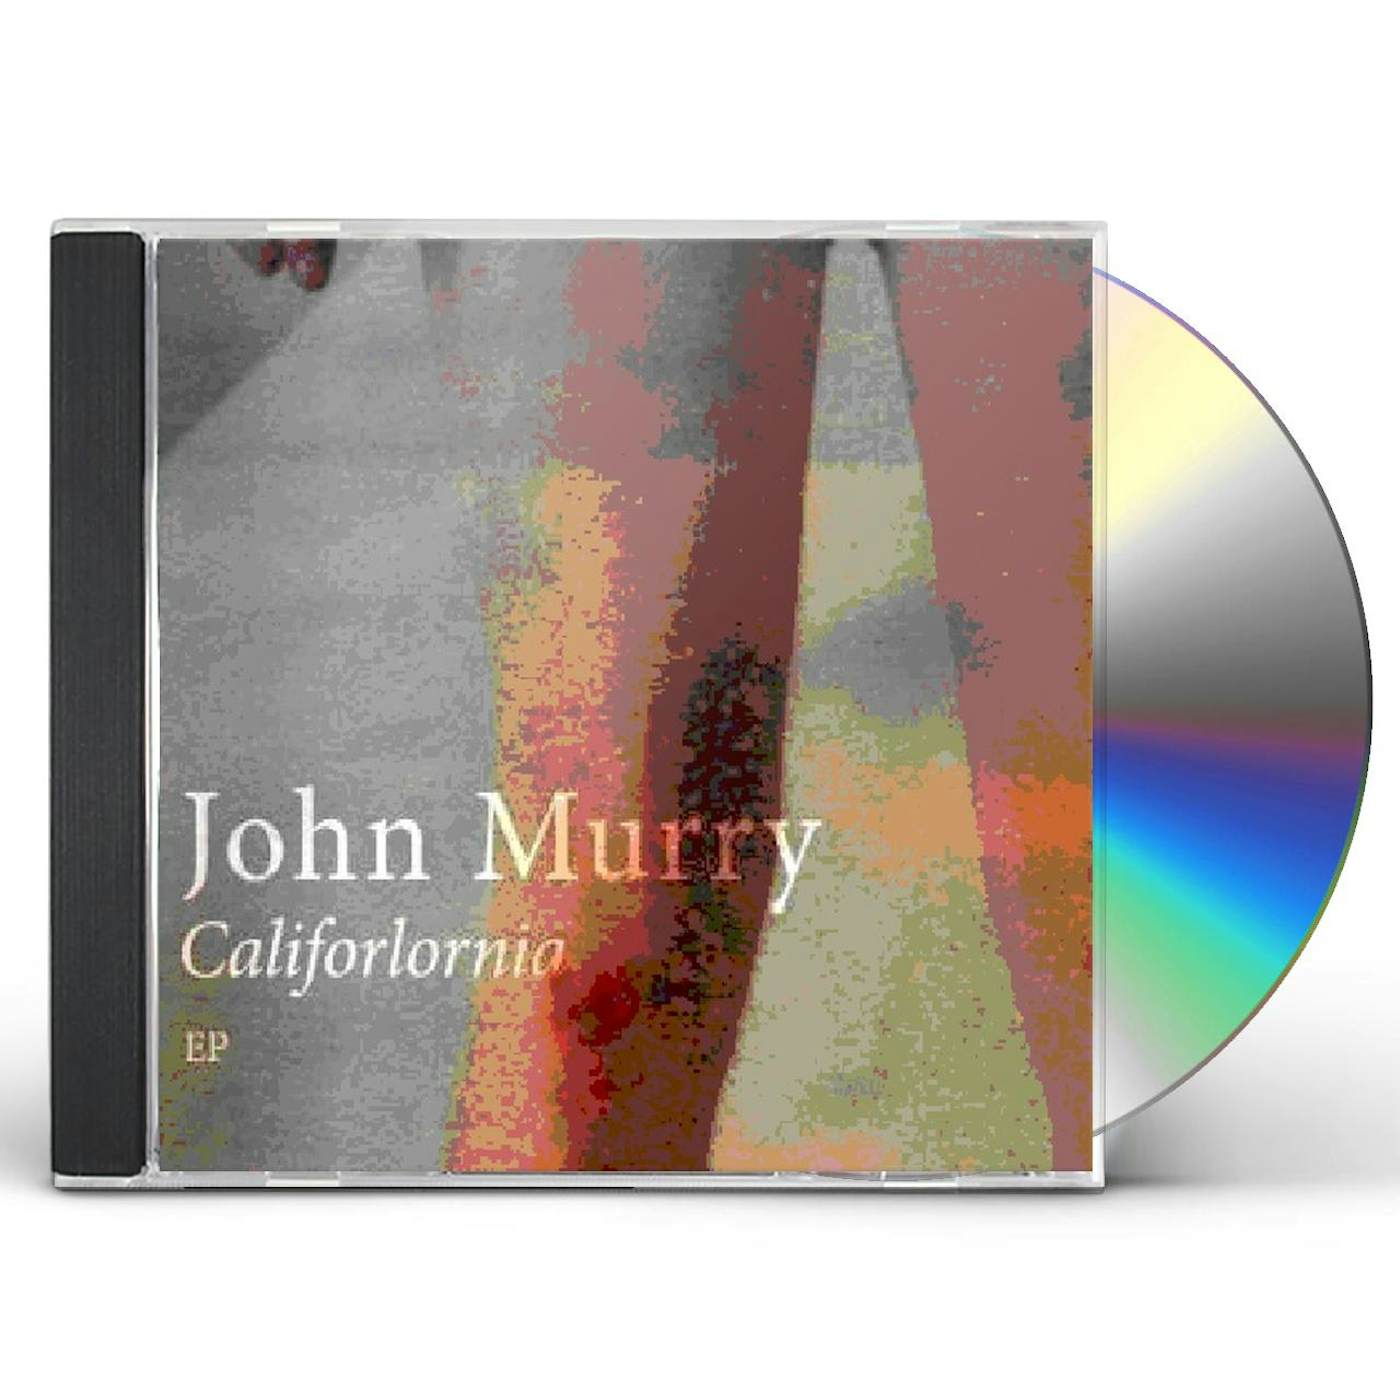 John Murry CALIFORLORNIA CD